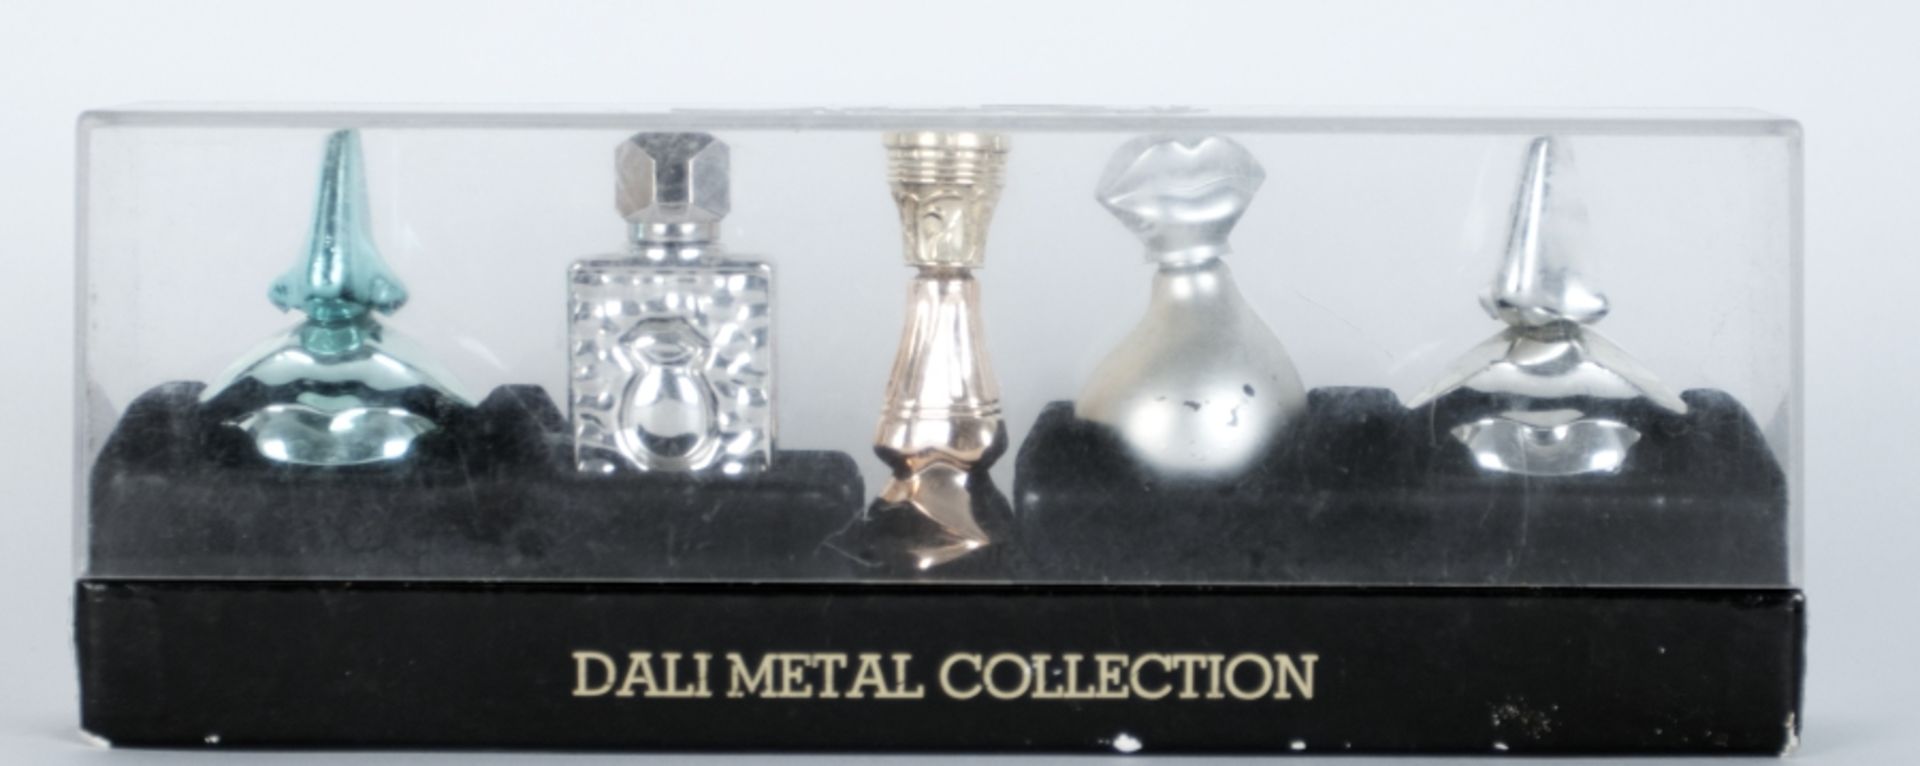 Dali, nach Salvador:  Parfumflakons "Dali Metal Collection" - Image 4 of 4